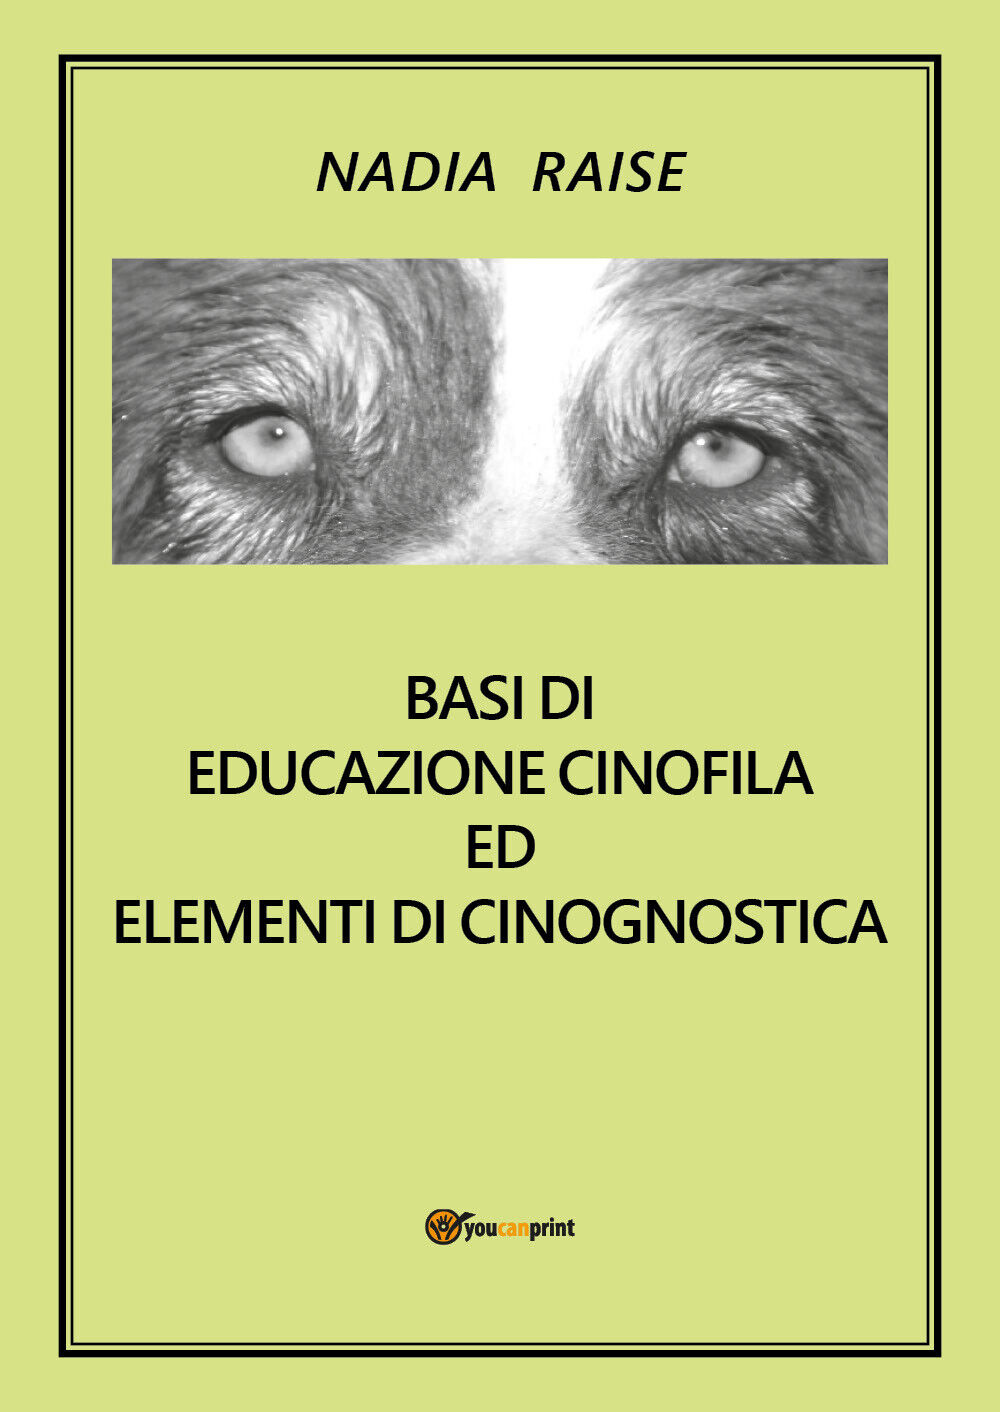 Basi di educazione cinofila ed elementi di cinognostica (Nadia Raise) - ER